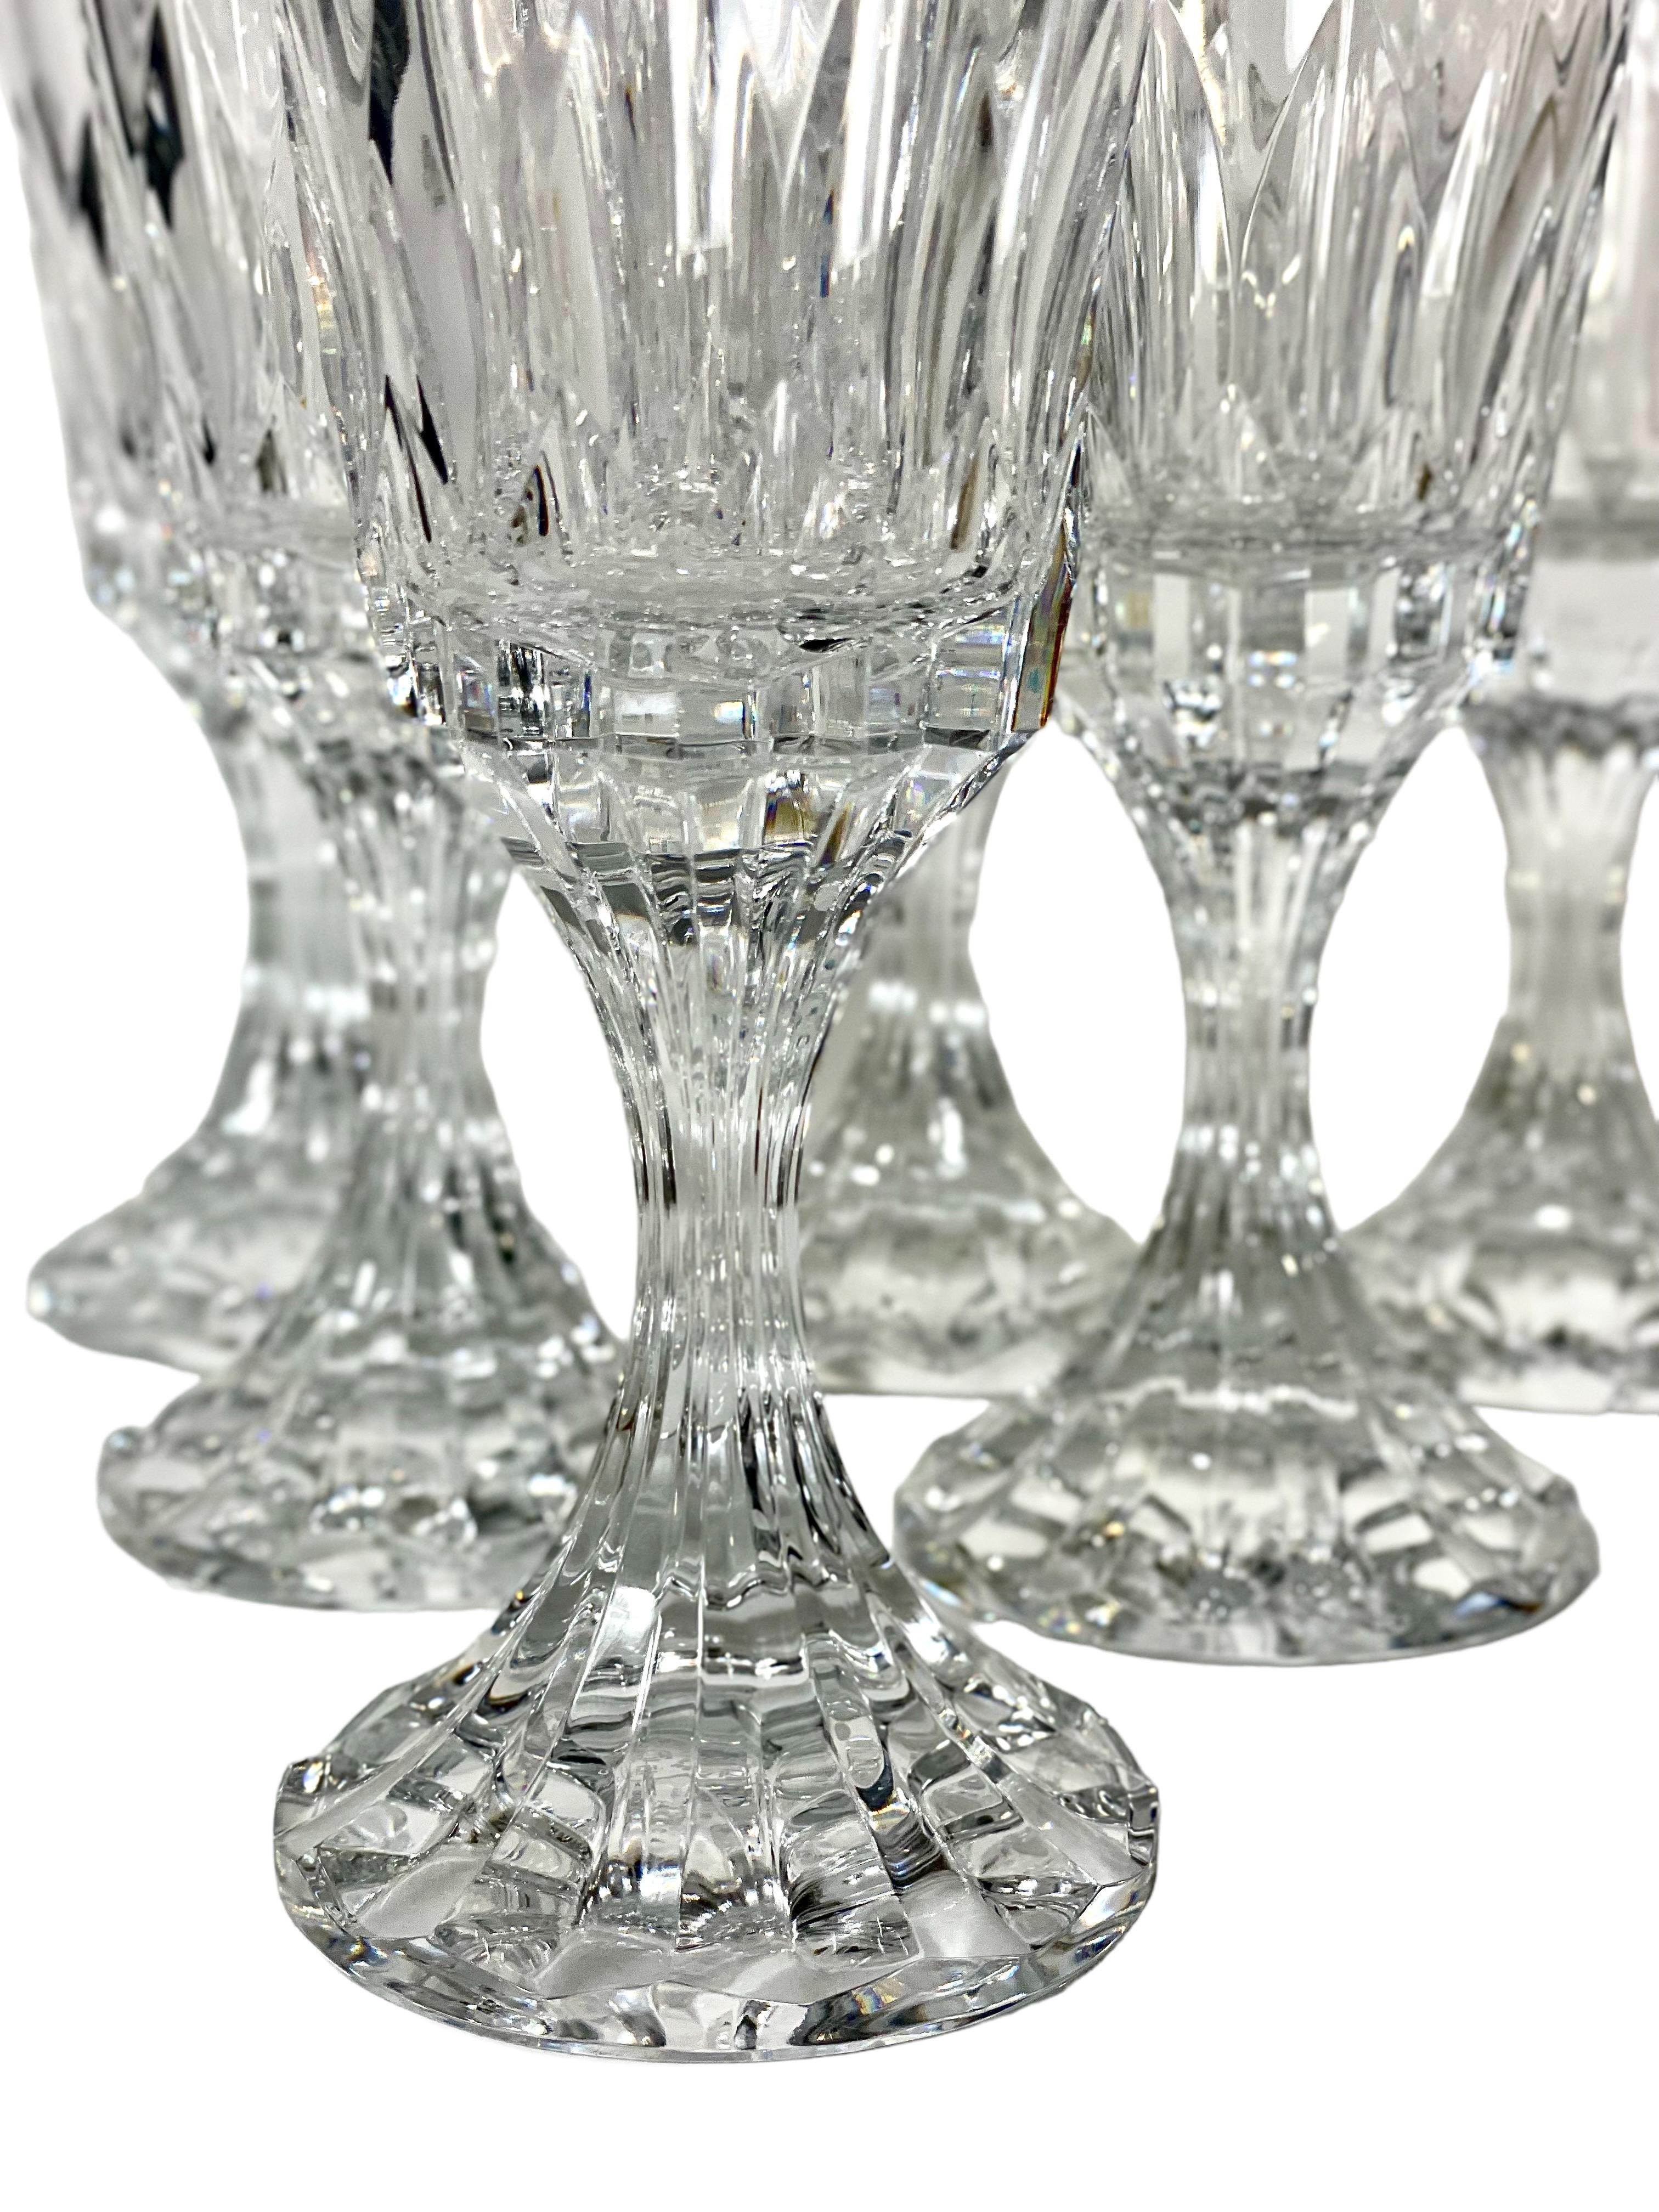 Un somptueux ensemble de six verres à vin en cristal de Baccarat, dans le design recherché d'Assas. Signés par une gravure à l'acide sur leur base, ces verres substantiels sont dotés d'un pied magnifiquement sculpté et d'une tige qui capte la